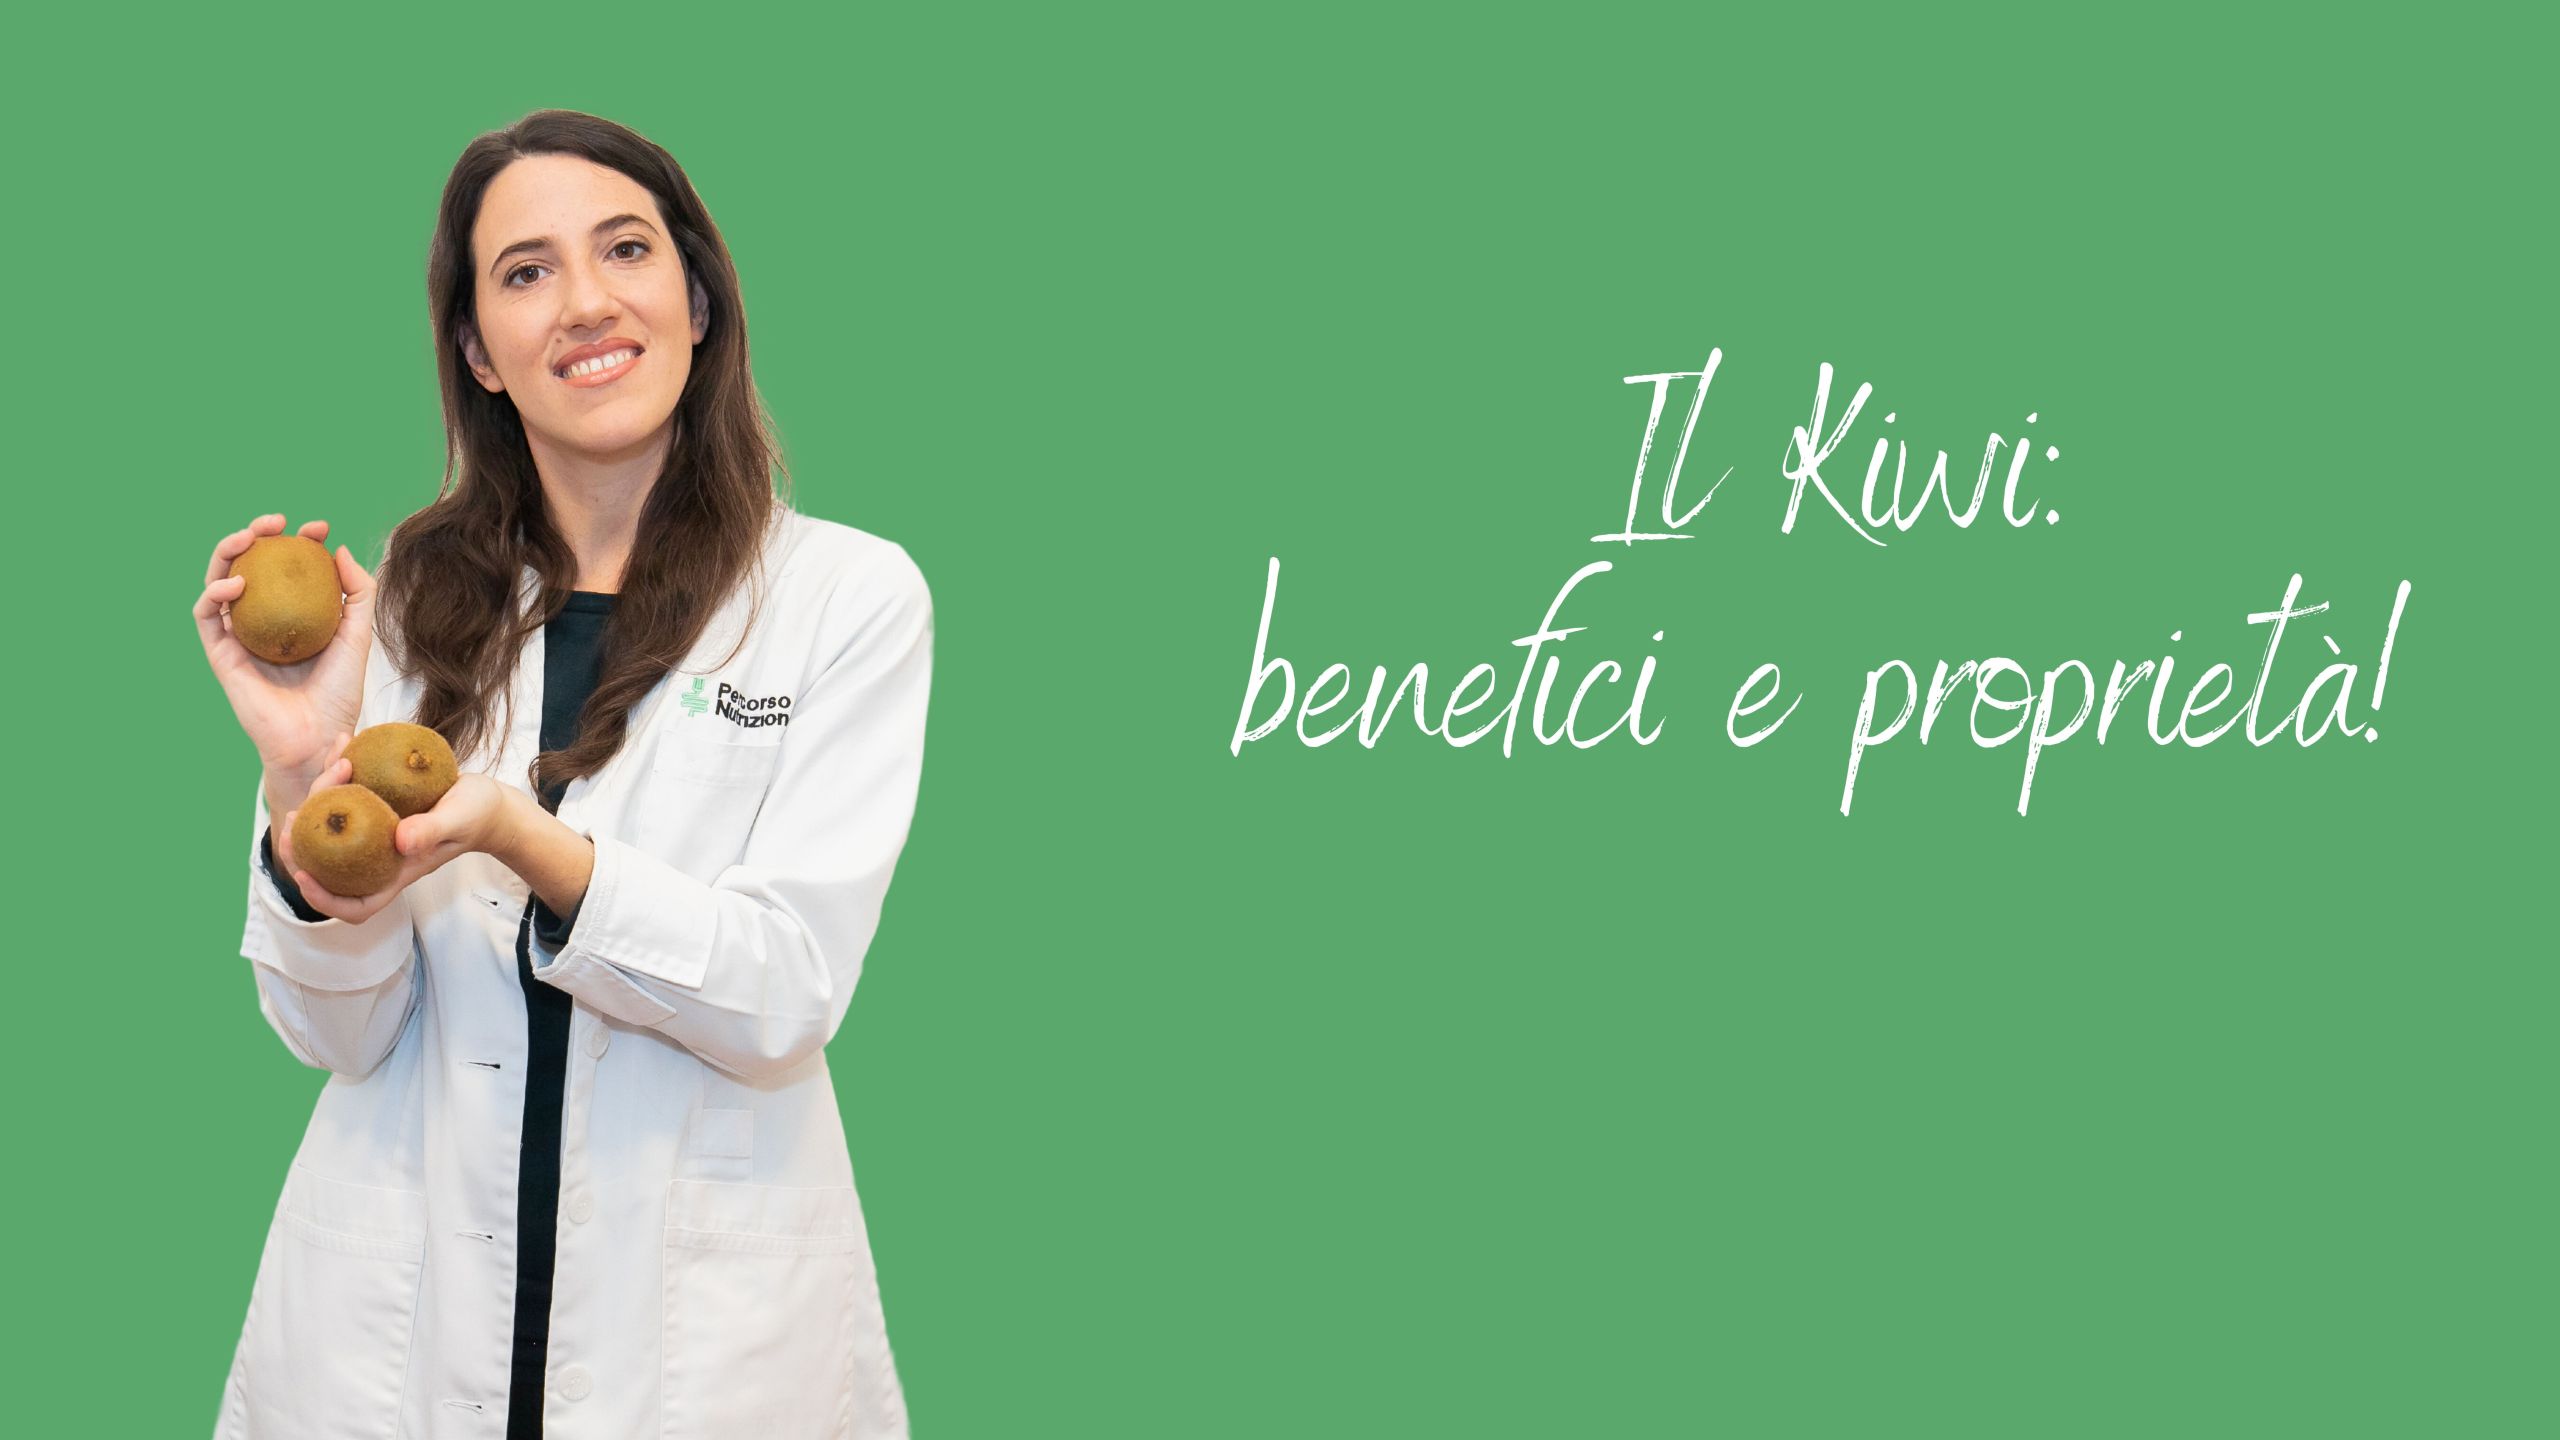 Kiwi: benefici e proprietà